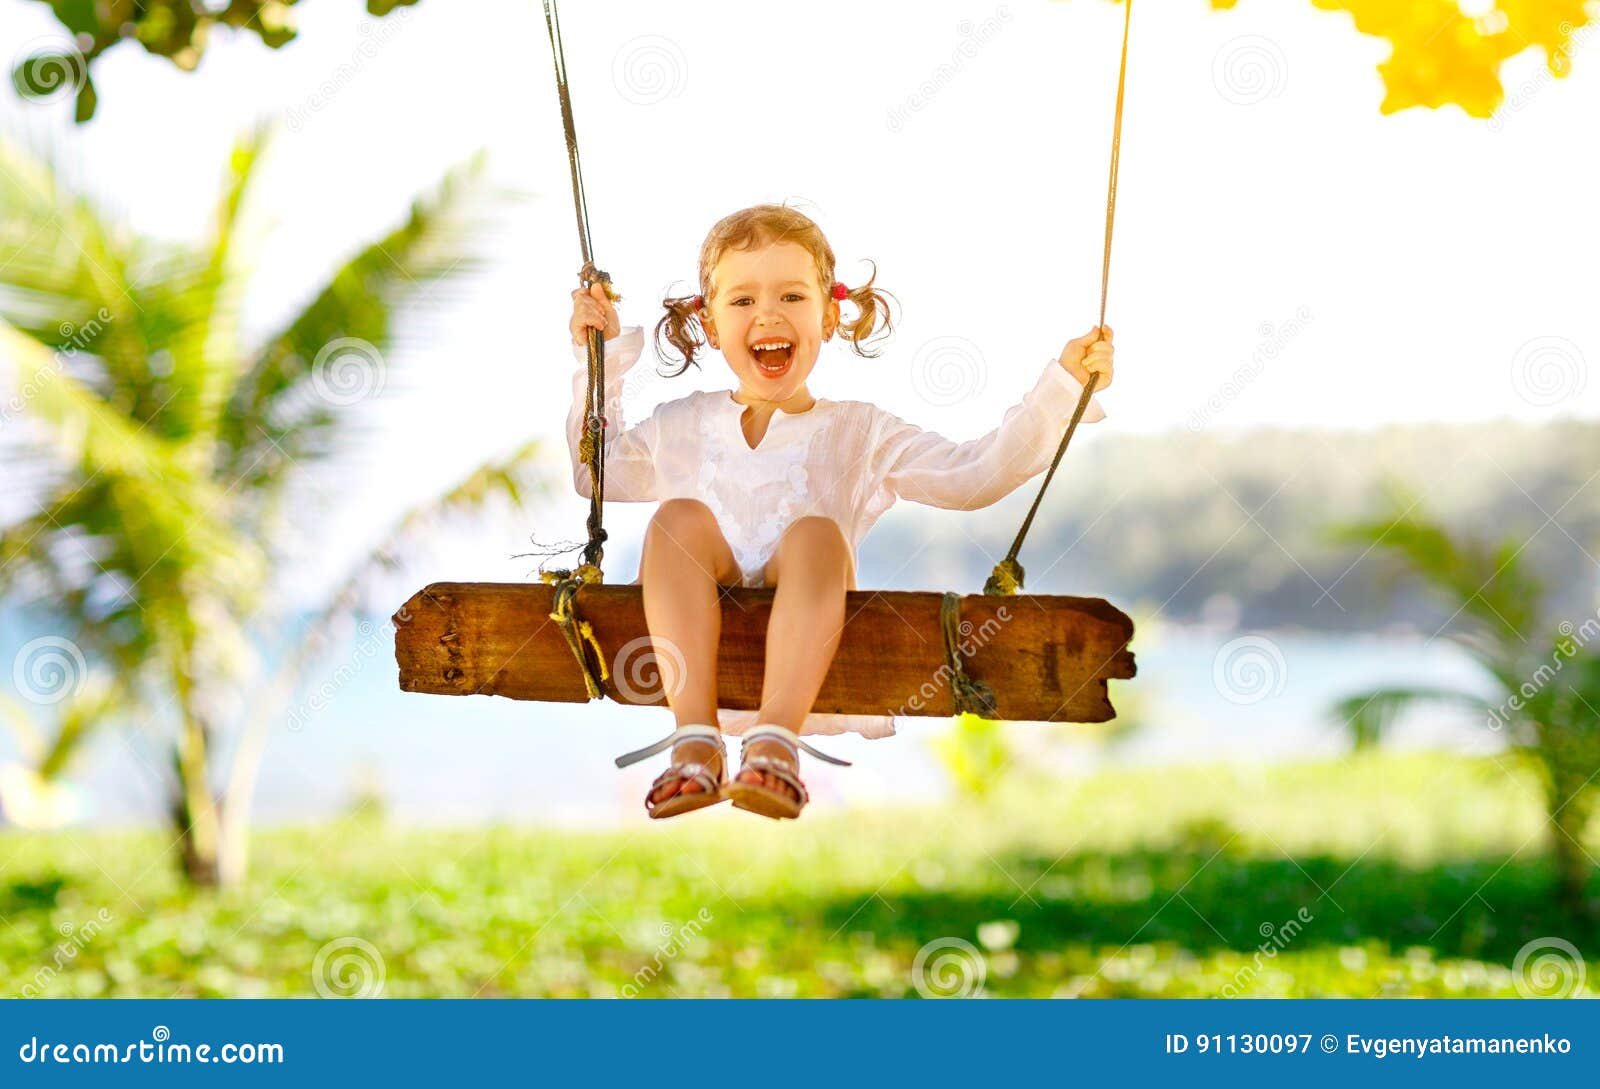 Счастливая девушка ребенка отбрасывая на качании на пляже в лете. Счастливая девушка ребенка смеясь над и отбрасывая на качании на пляже около океана в лете